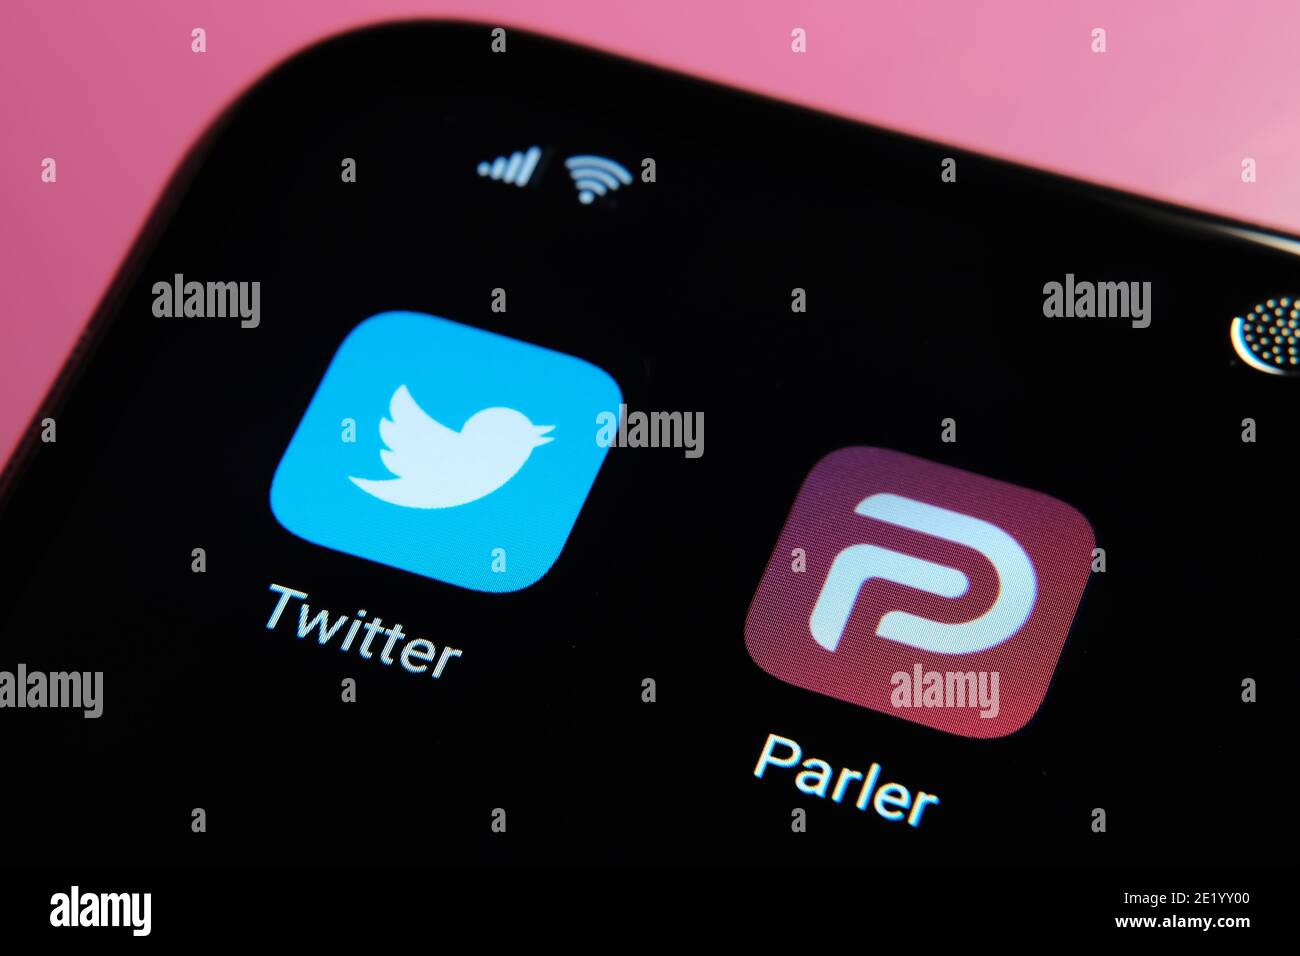 La aplicación Parler se ve en la pantalla del smartphone. Parler es una nueva red social prohibida en Google Play y App Store. Stafford, Reino Unido Noviembre de 10 2020 Foto de stock